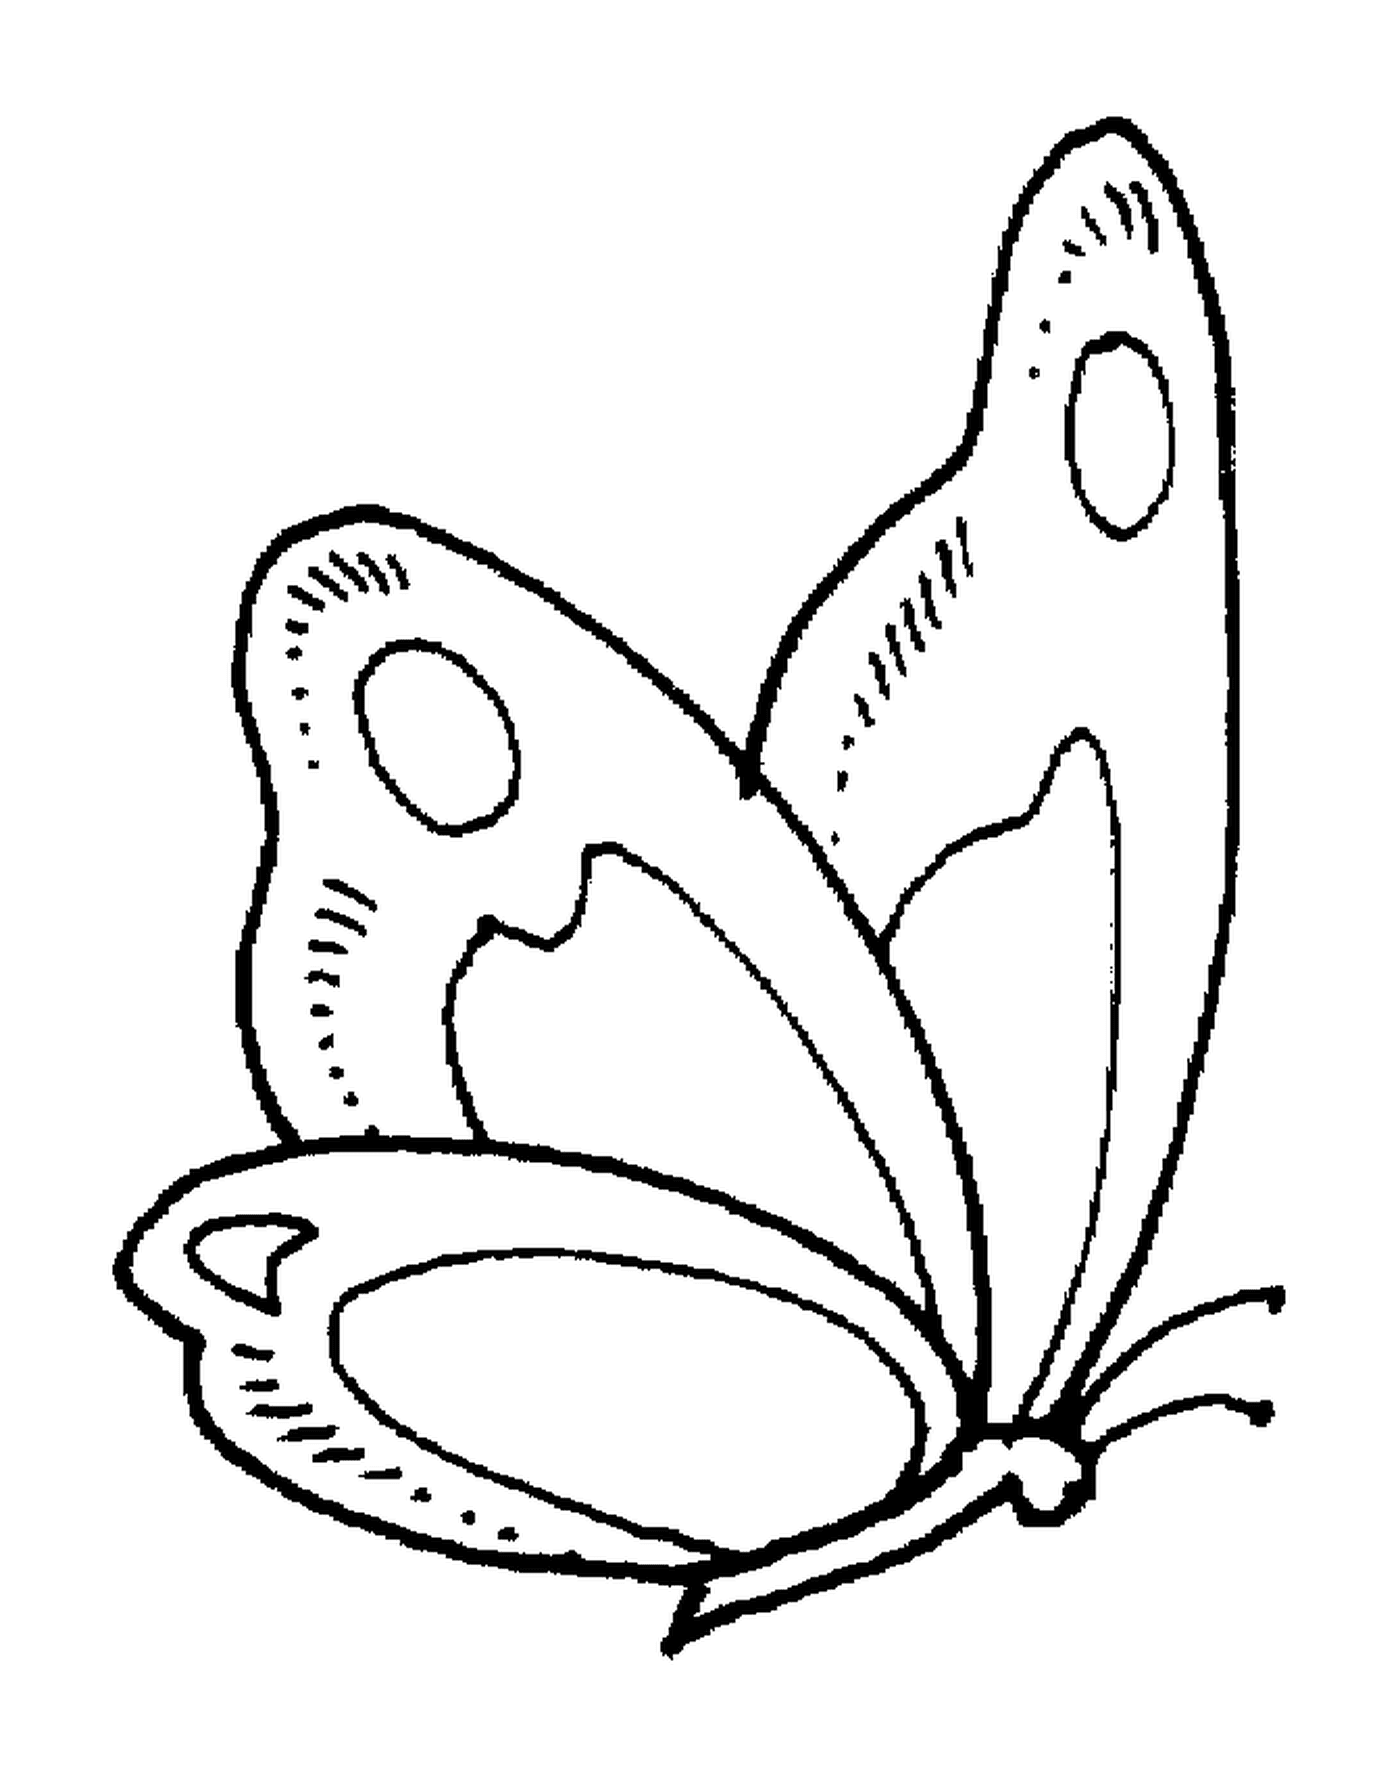  Schmetterling mit zarten Flügeln 